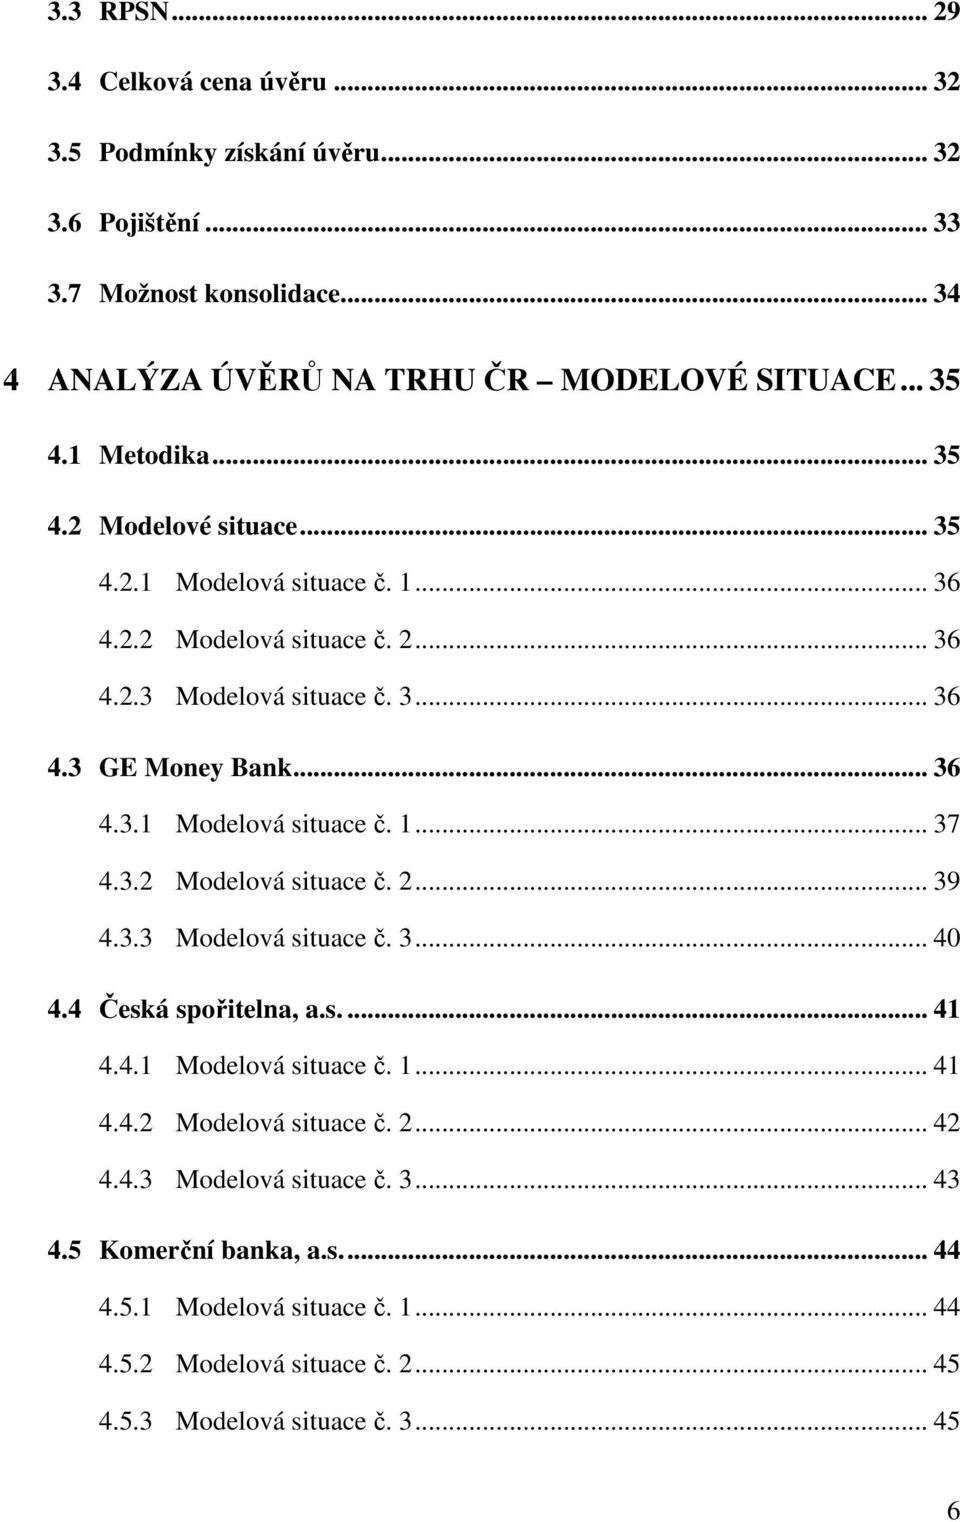 3.2 Modelová situace č. 2... 39 4.3.3 Modelová situace č. 3... 40 4.4 Česká spořitelna, a.s.... 41 4.4.1 Modelová situace č. 1... 41 4.4.2 Modelová situace č. 2... 42 4.4.3 Modelová situace č. 3... 43 4.